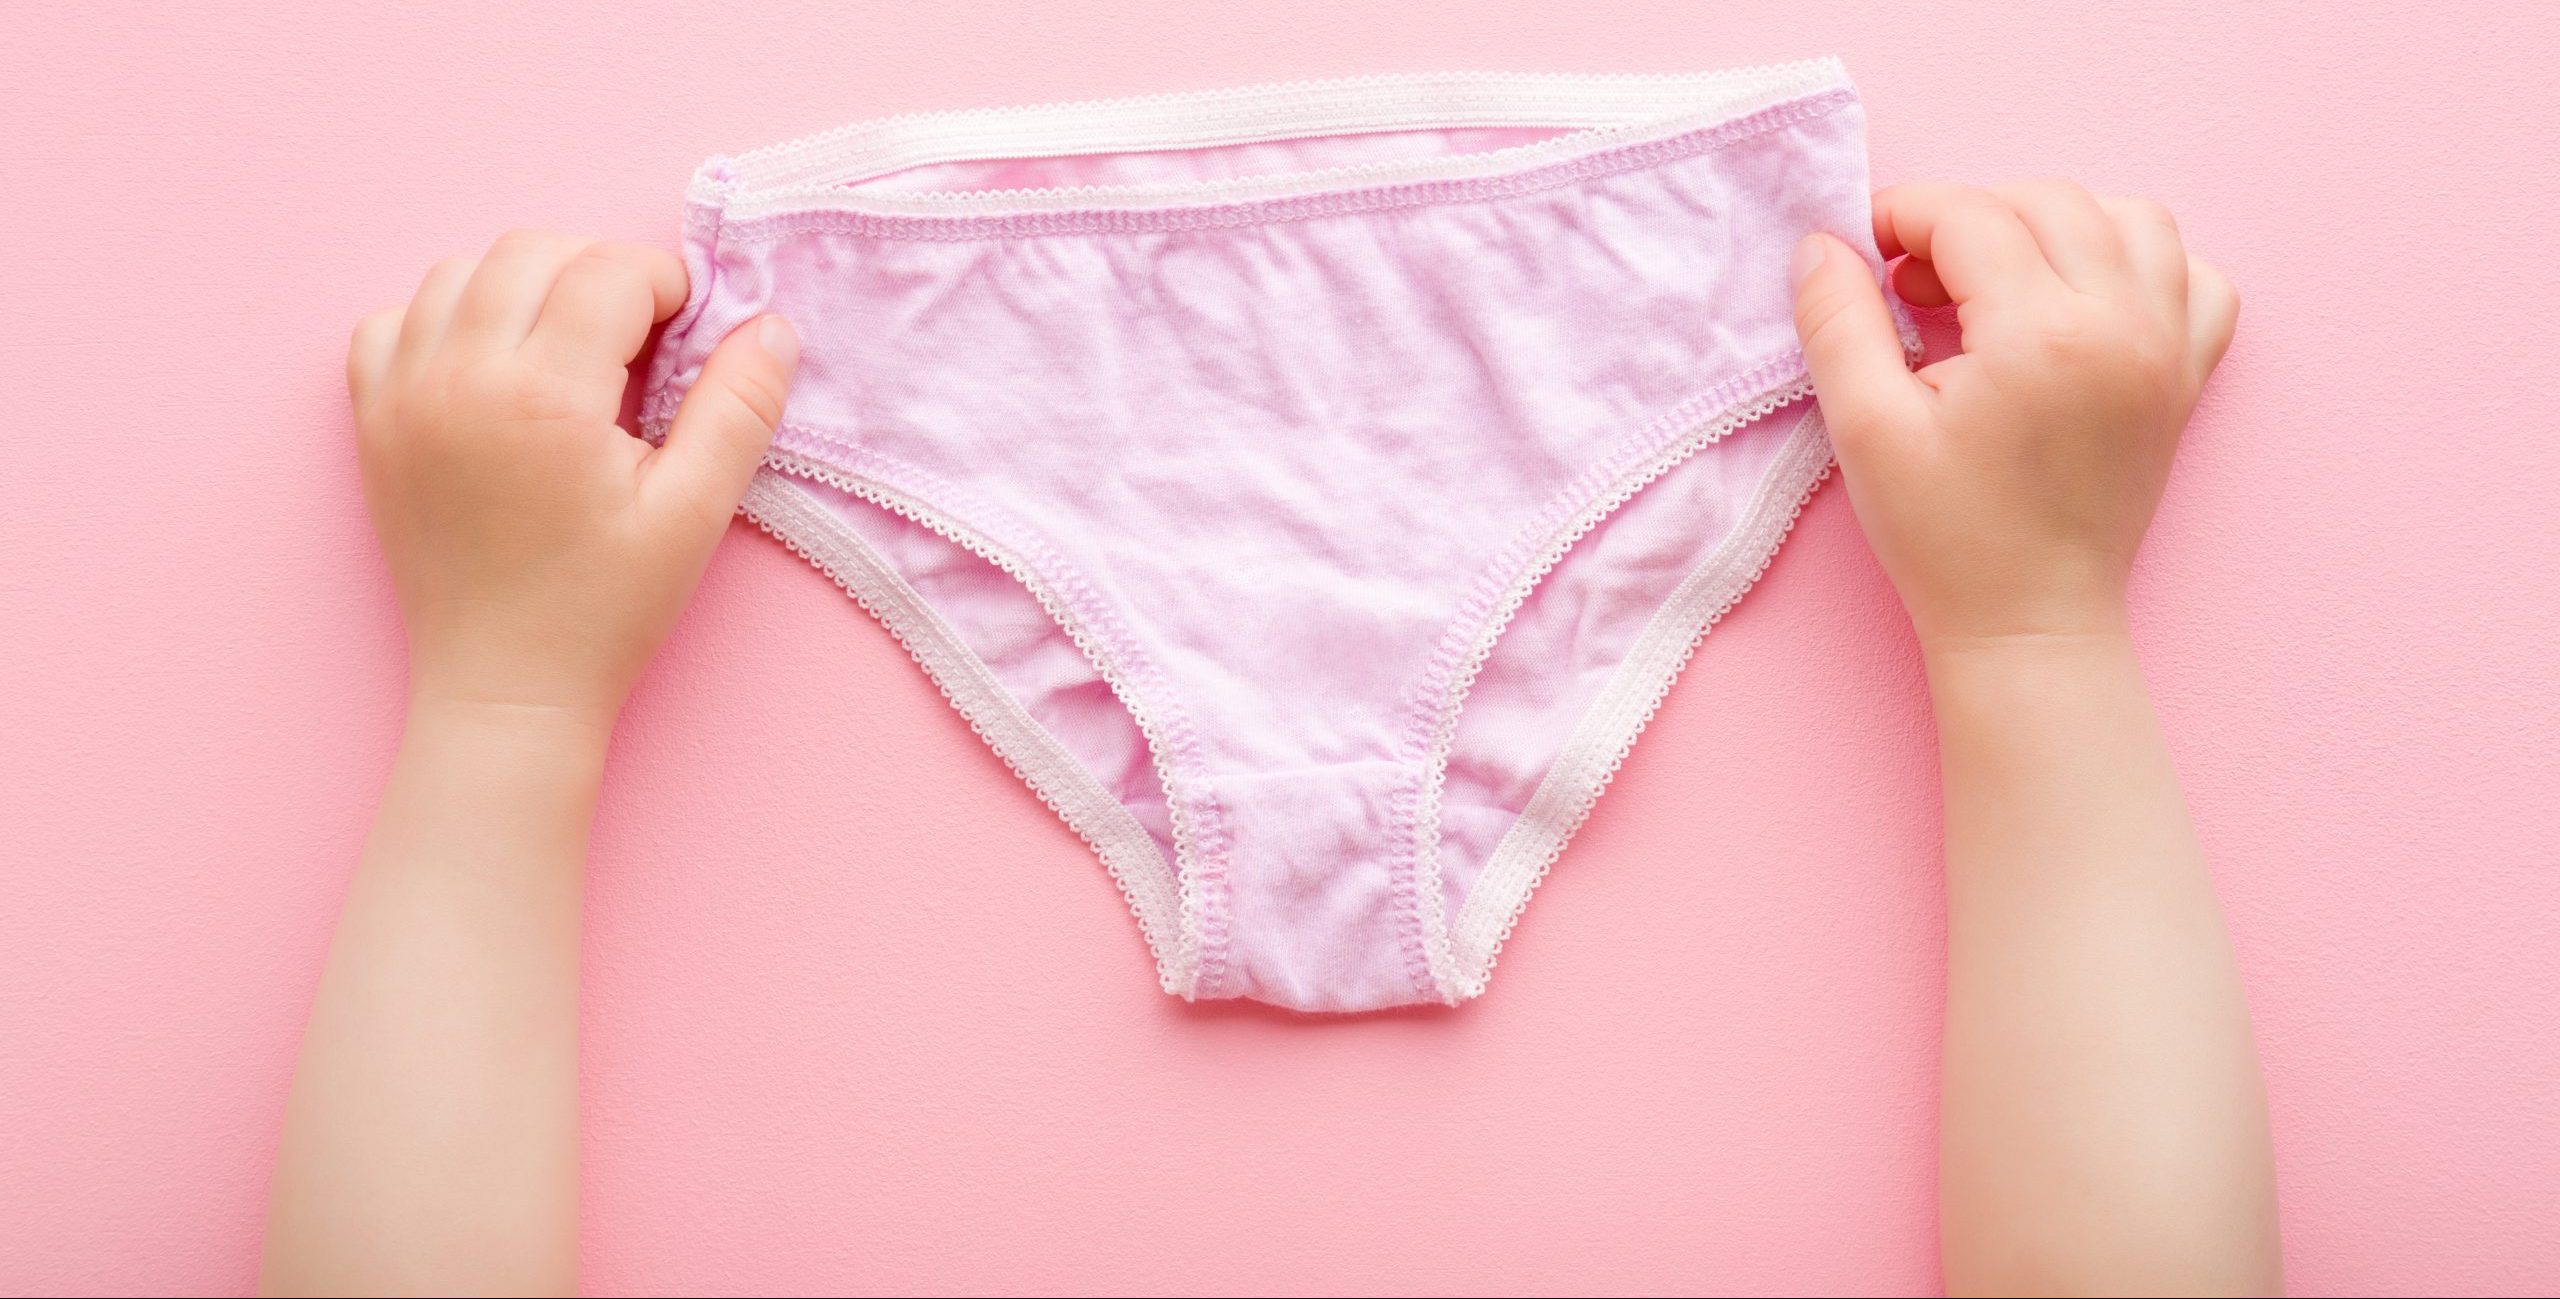 Hanes Tagless Cotton Big Girls' Underwear, 10-Count